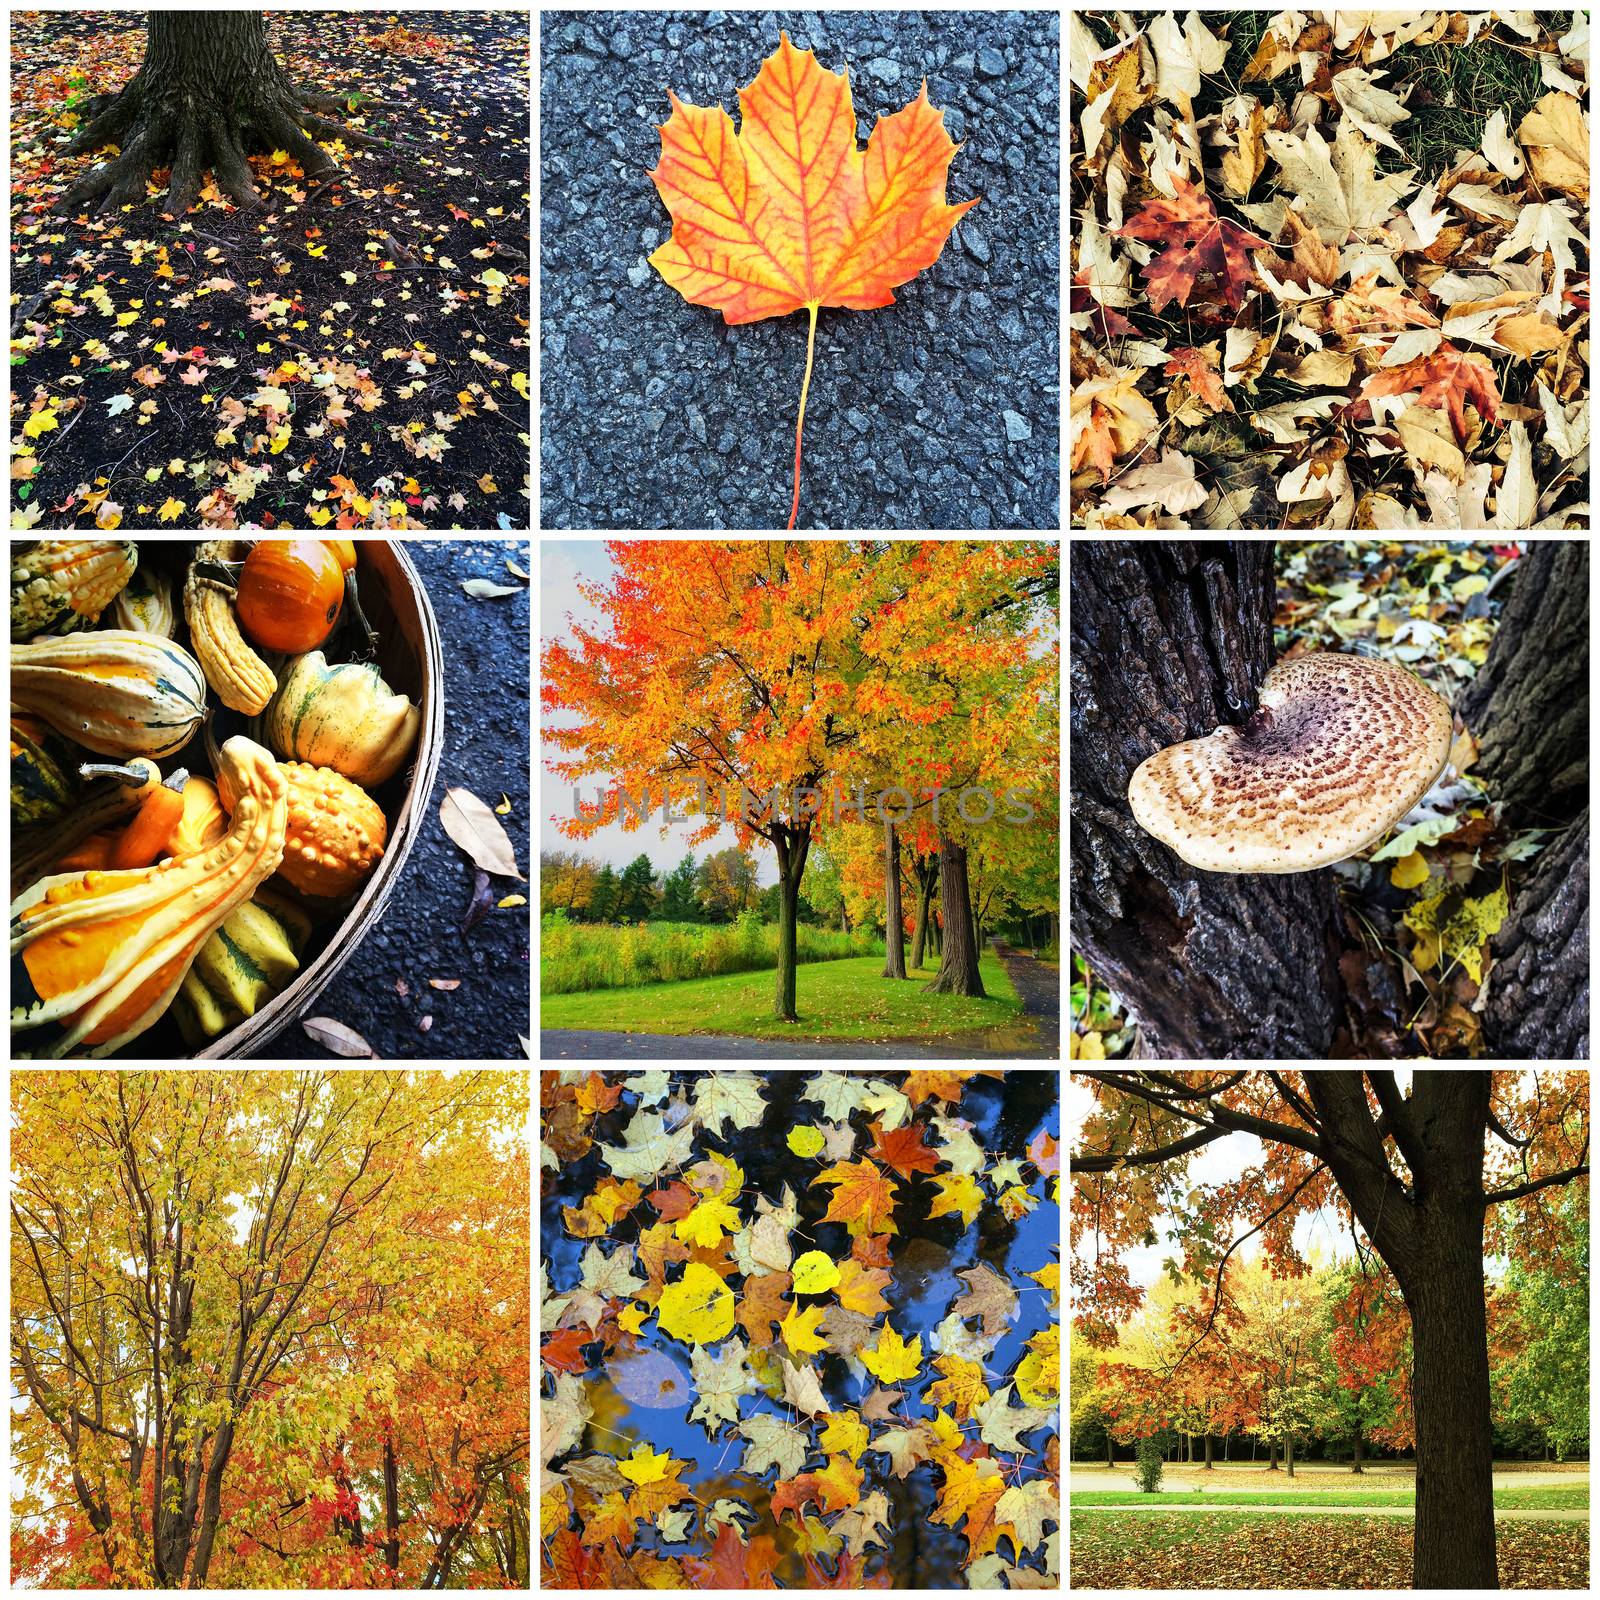 Autumn nature collage by anikasalsera